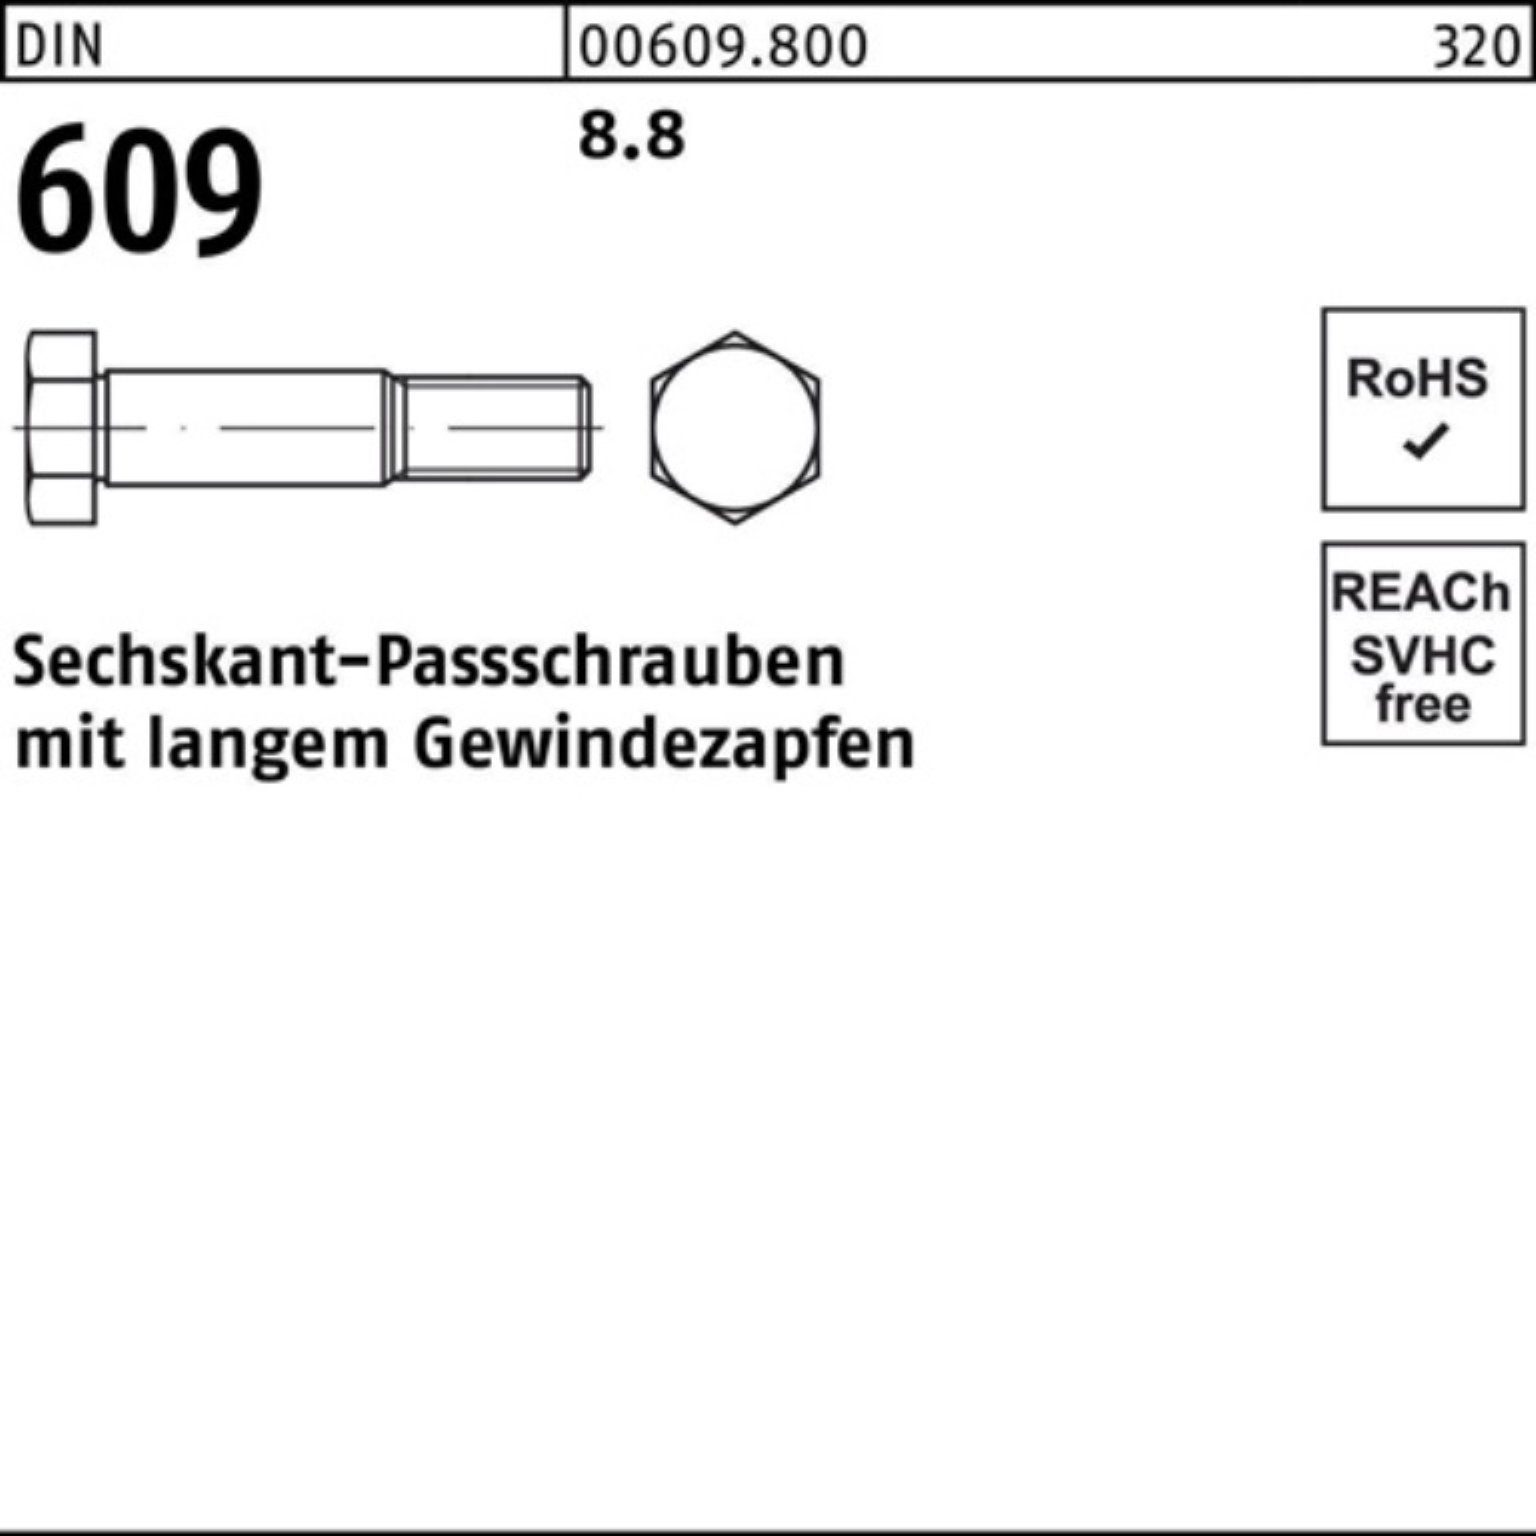 DIN Schraube 100er langem Gewindezapfen Reyher 609 55 M20x Pack Sechskantpassschraube